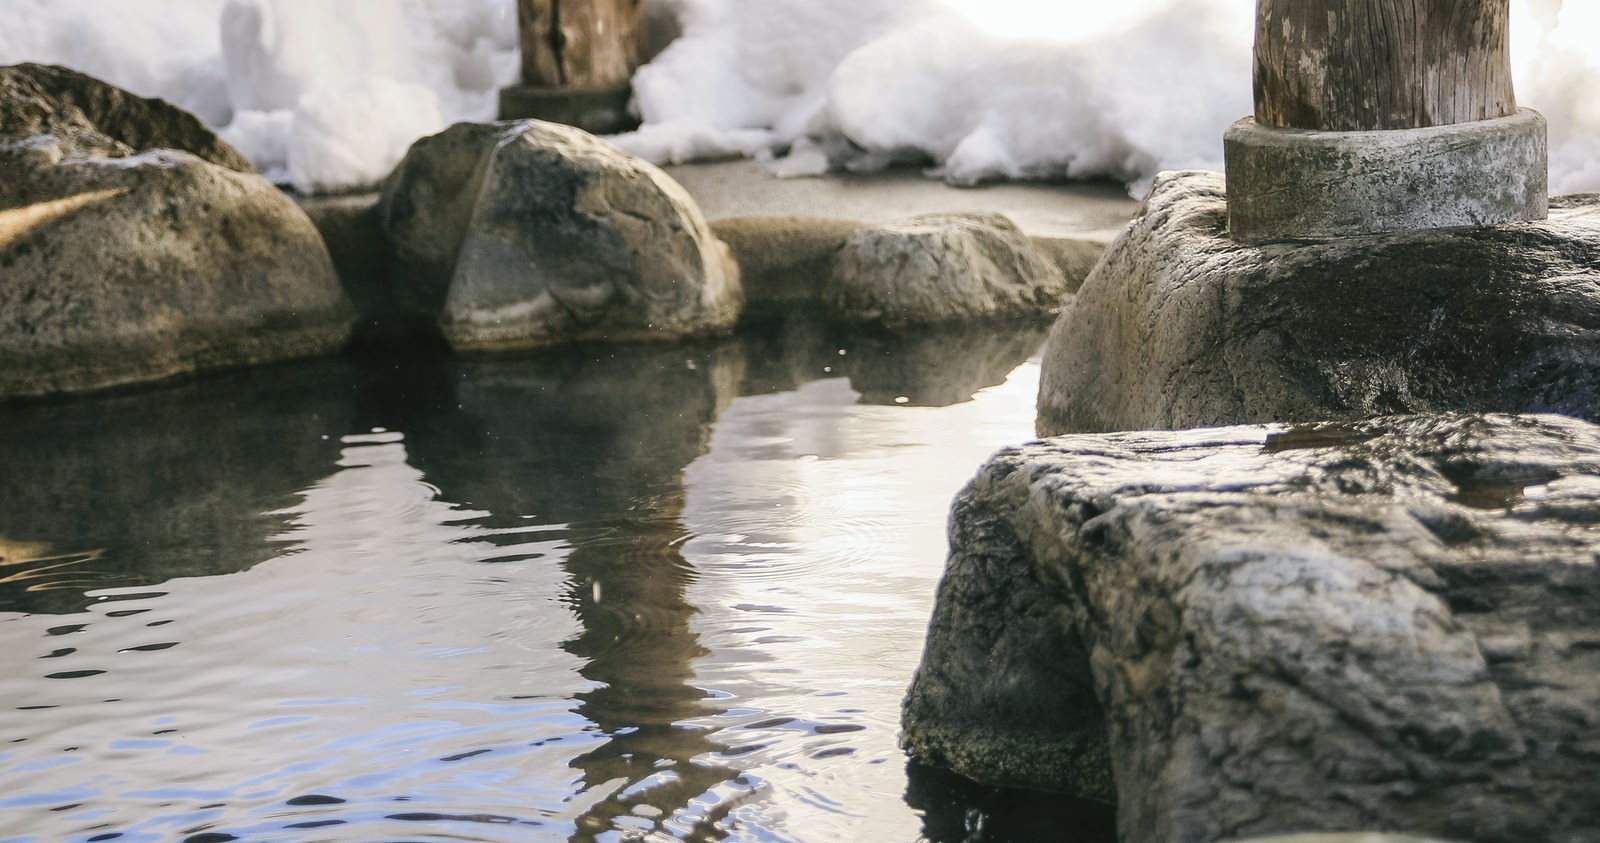 「腰を掛けると滑らかで心地よい岡田旅館の岩露天風呂 | フリー素材のぱくたそ」の写真